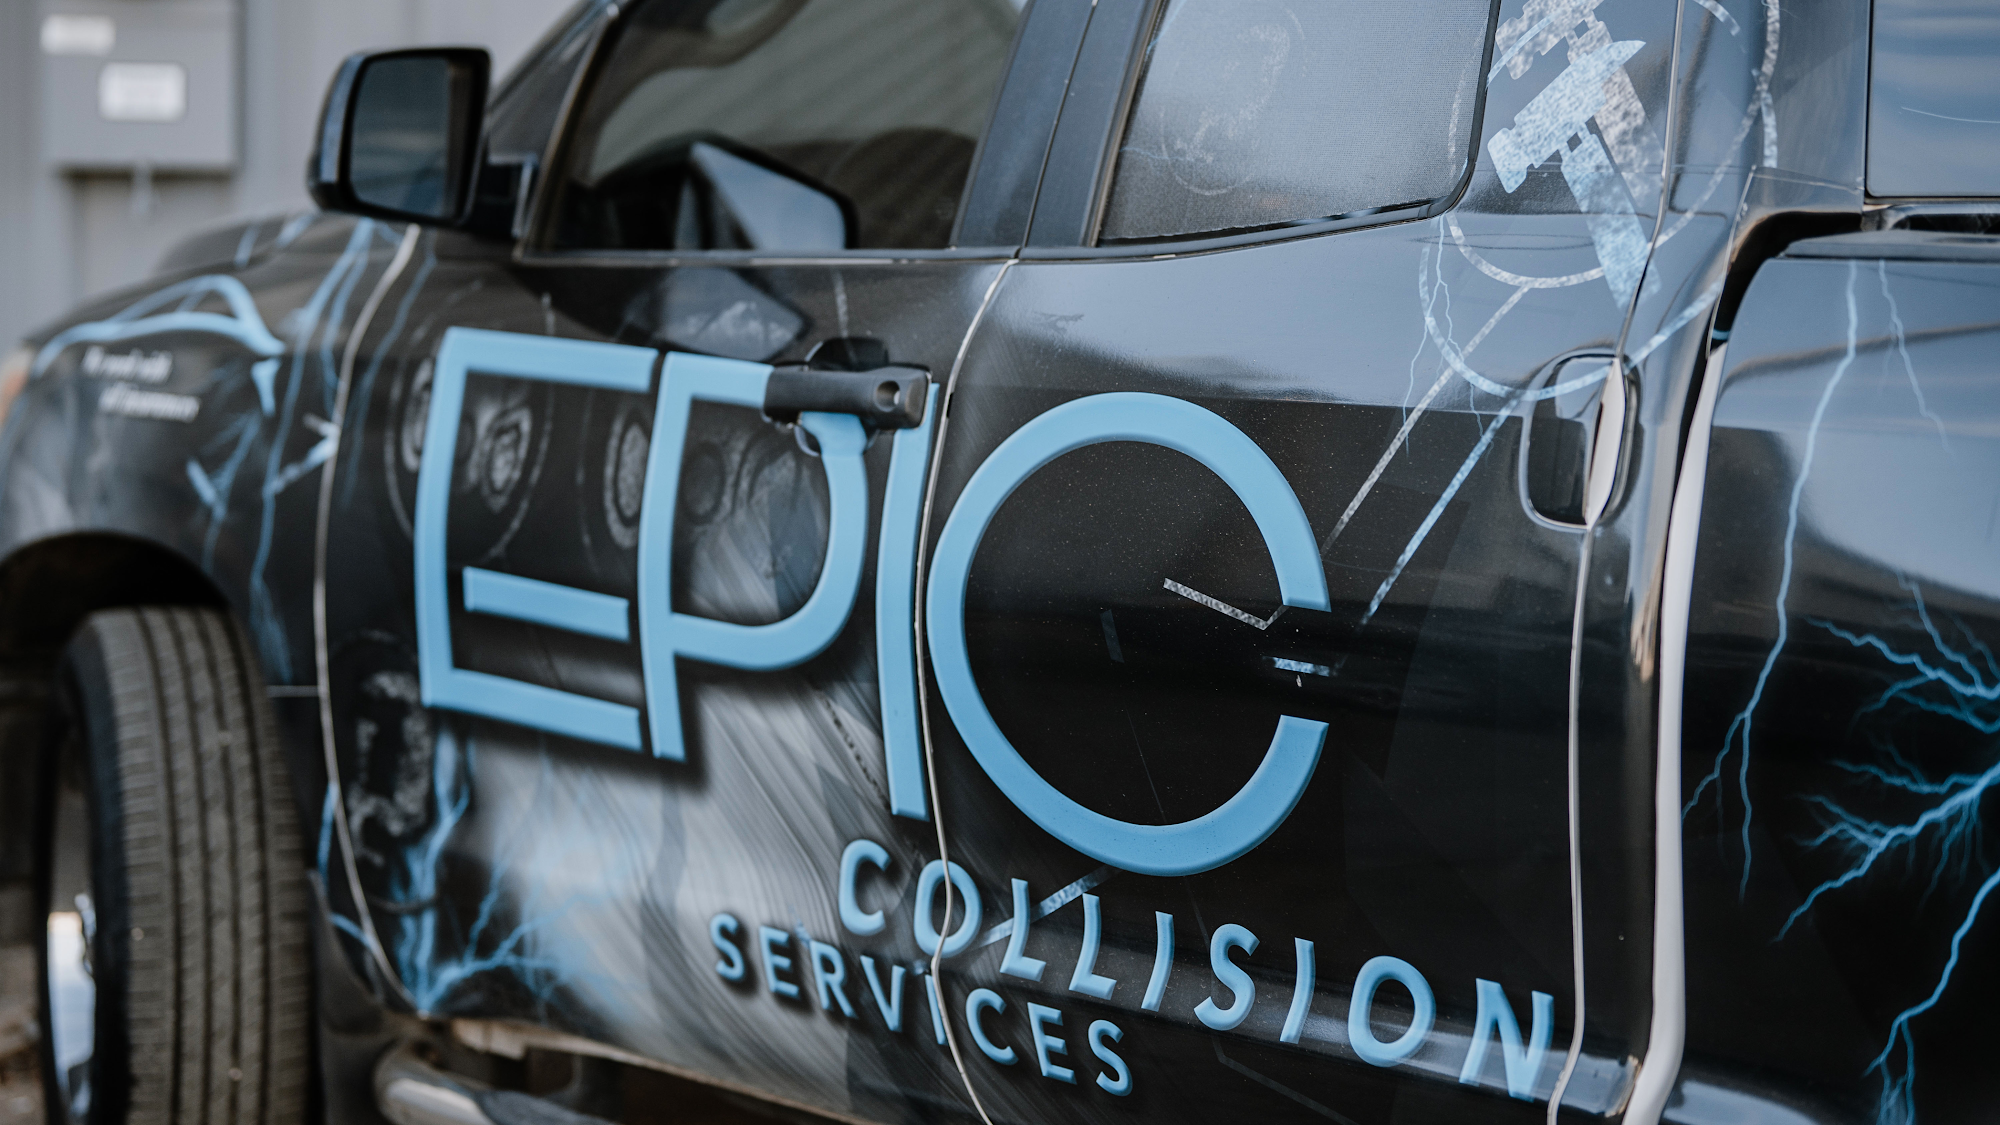 Epic Collision Services, Inc.